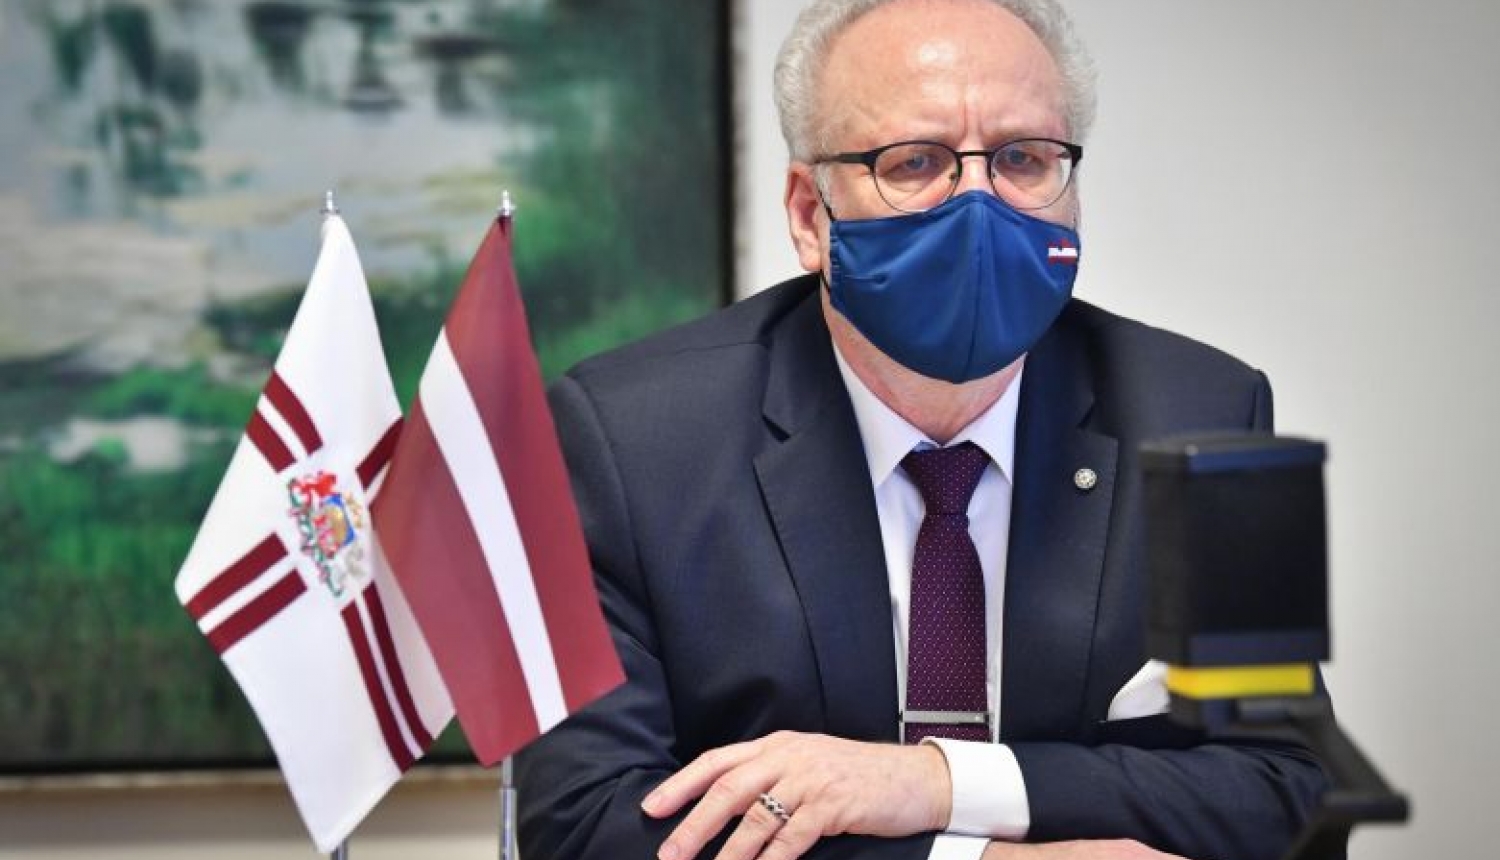 Valsts prezidents: Latvijas iedzīvotāju vakcinācija jāveic ātri un efektīvi